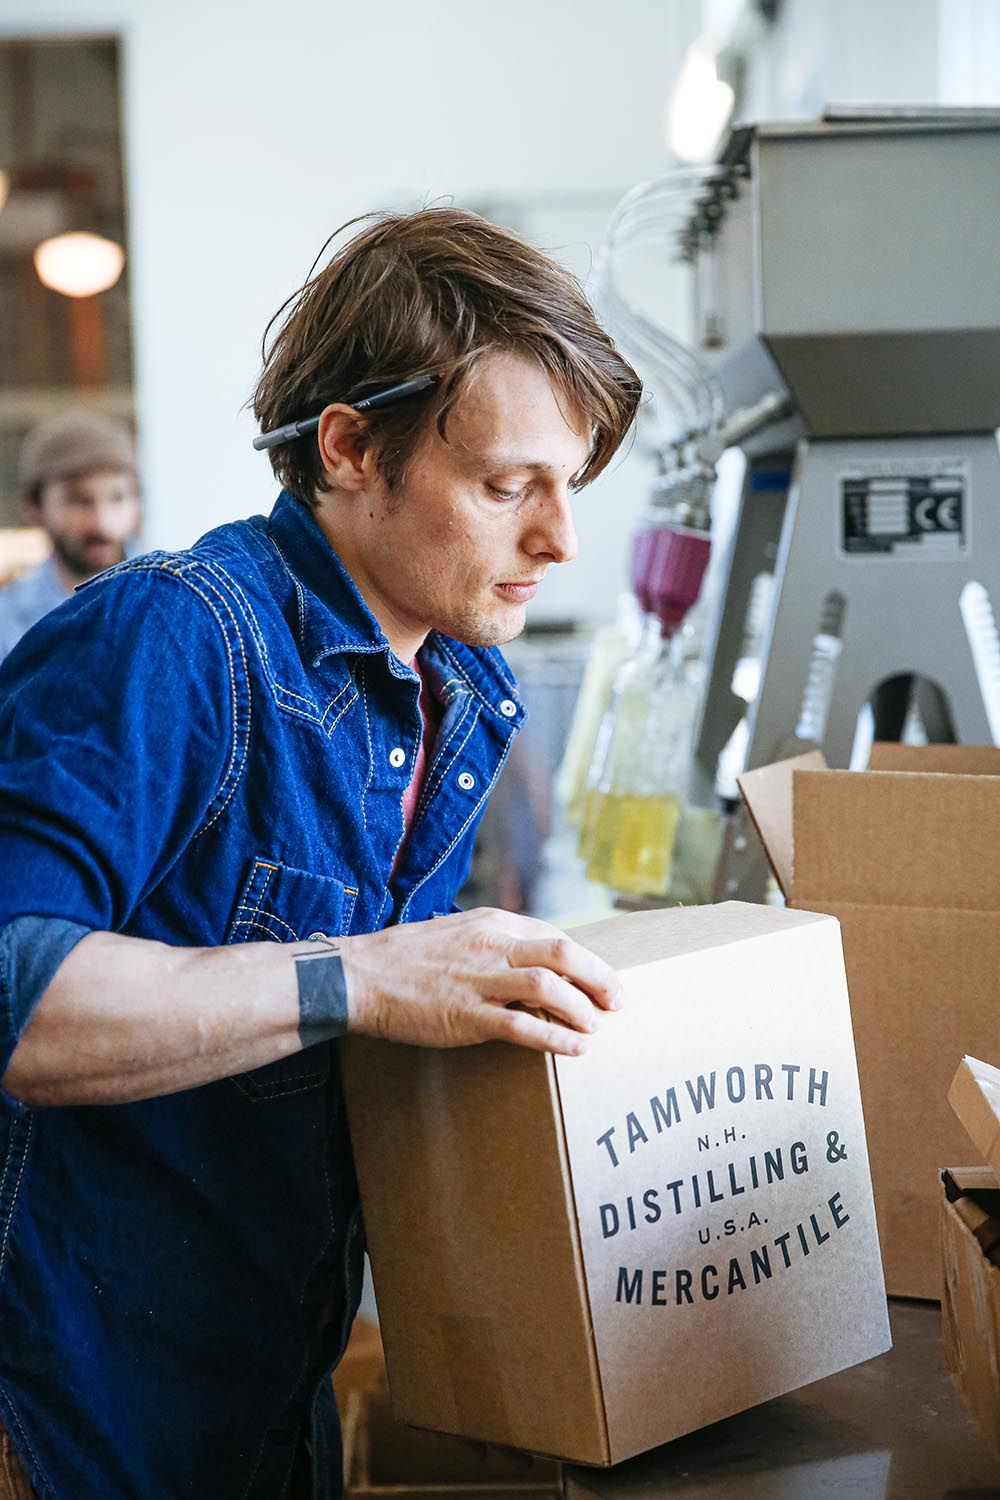 Jamie Oakes de Tamworth Distilling, empacando cajas de bebidas espirituosas en la línea de embotellado